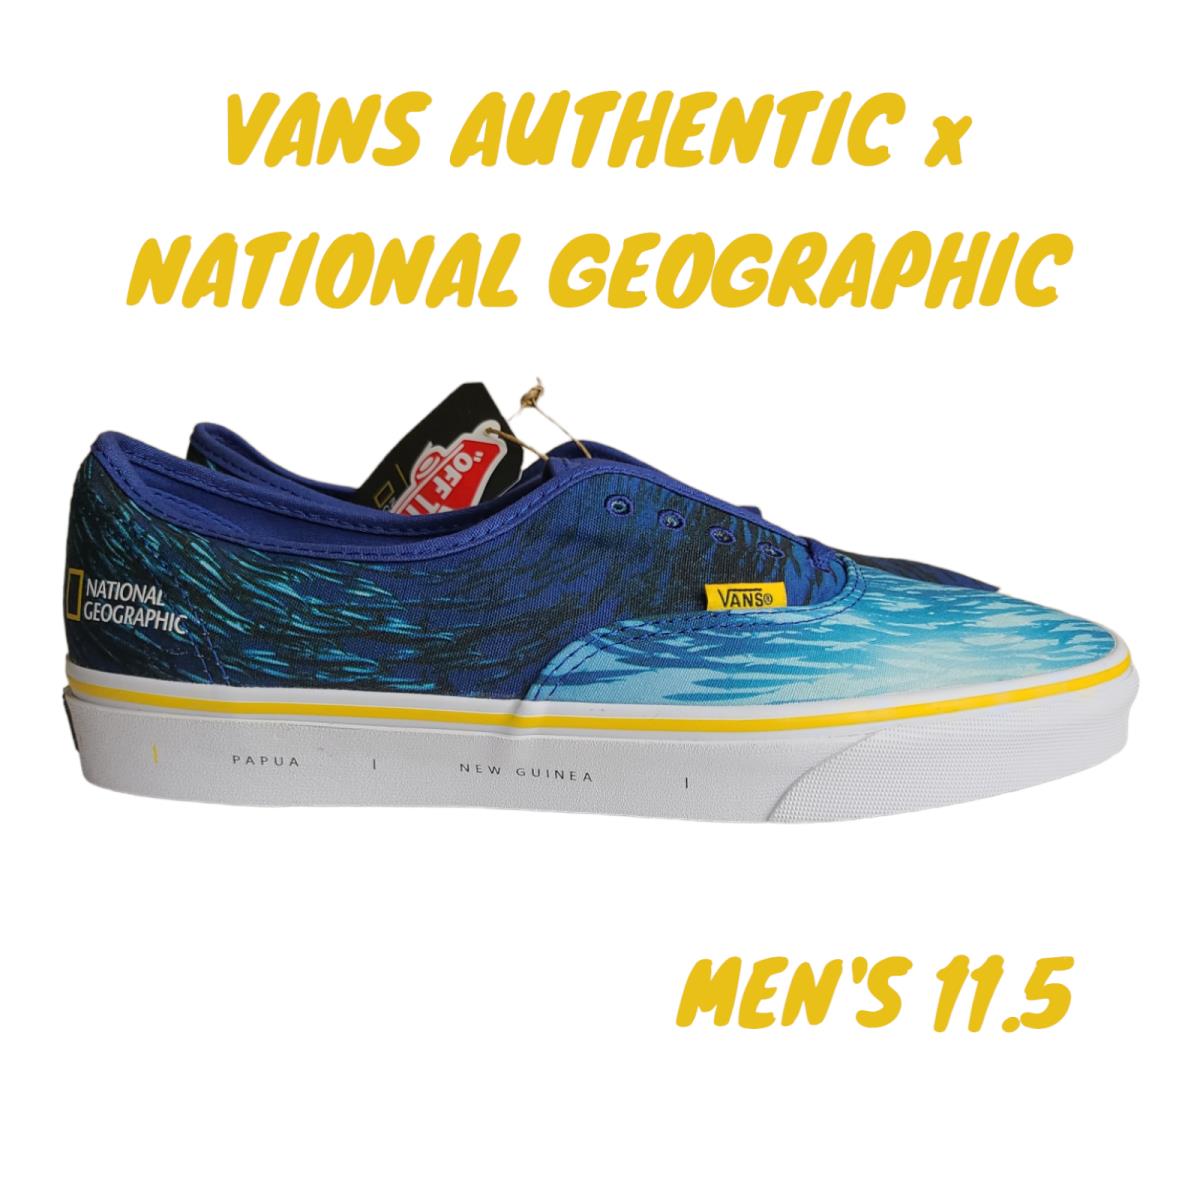 Vans Authentic Men s Vans National Geographic Ocean Blue Sneaker Size 11.5